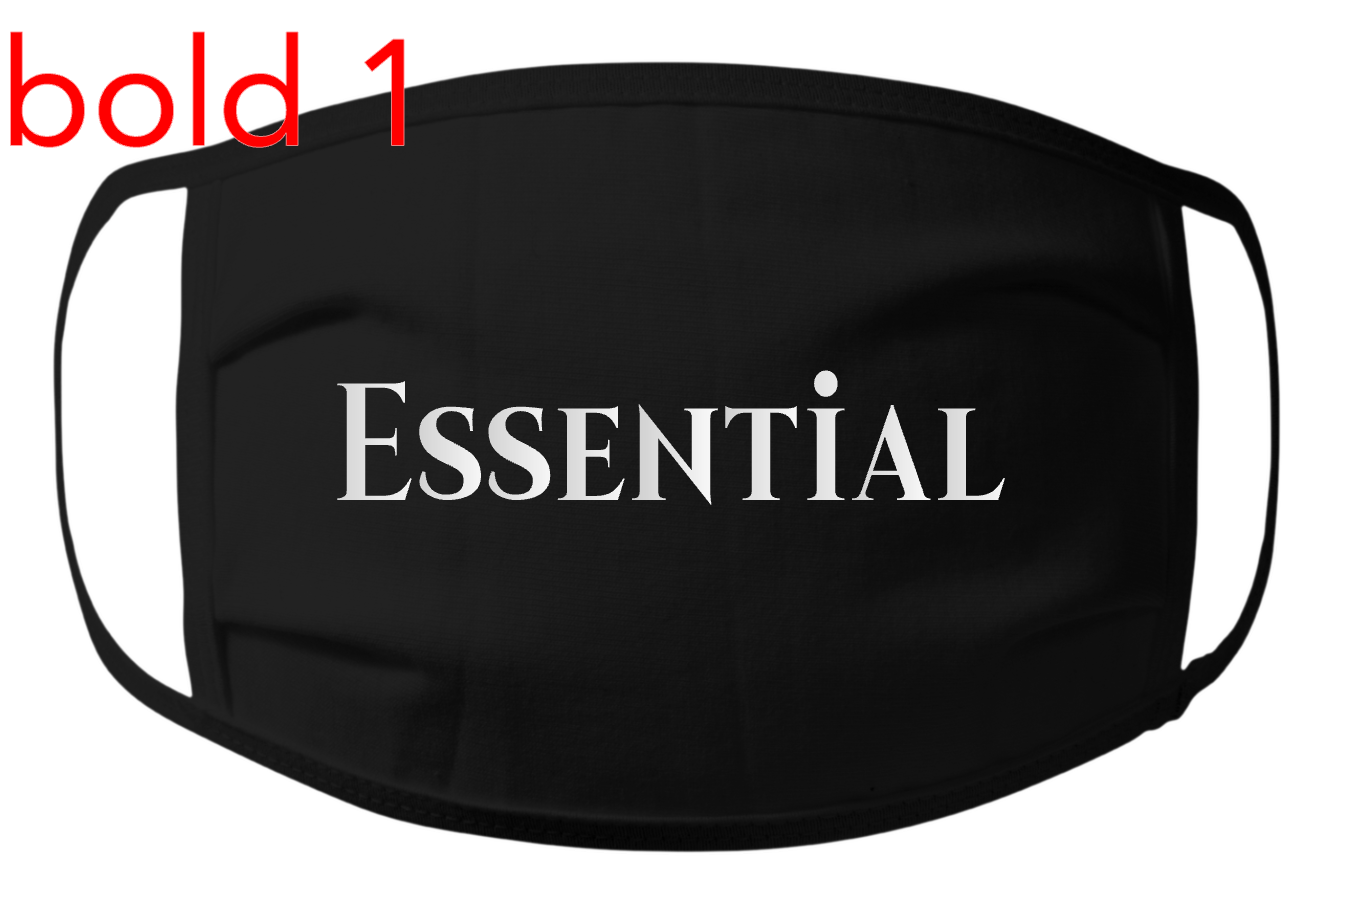 Essential Mask